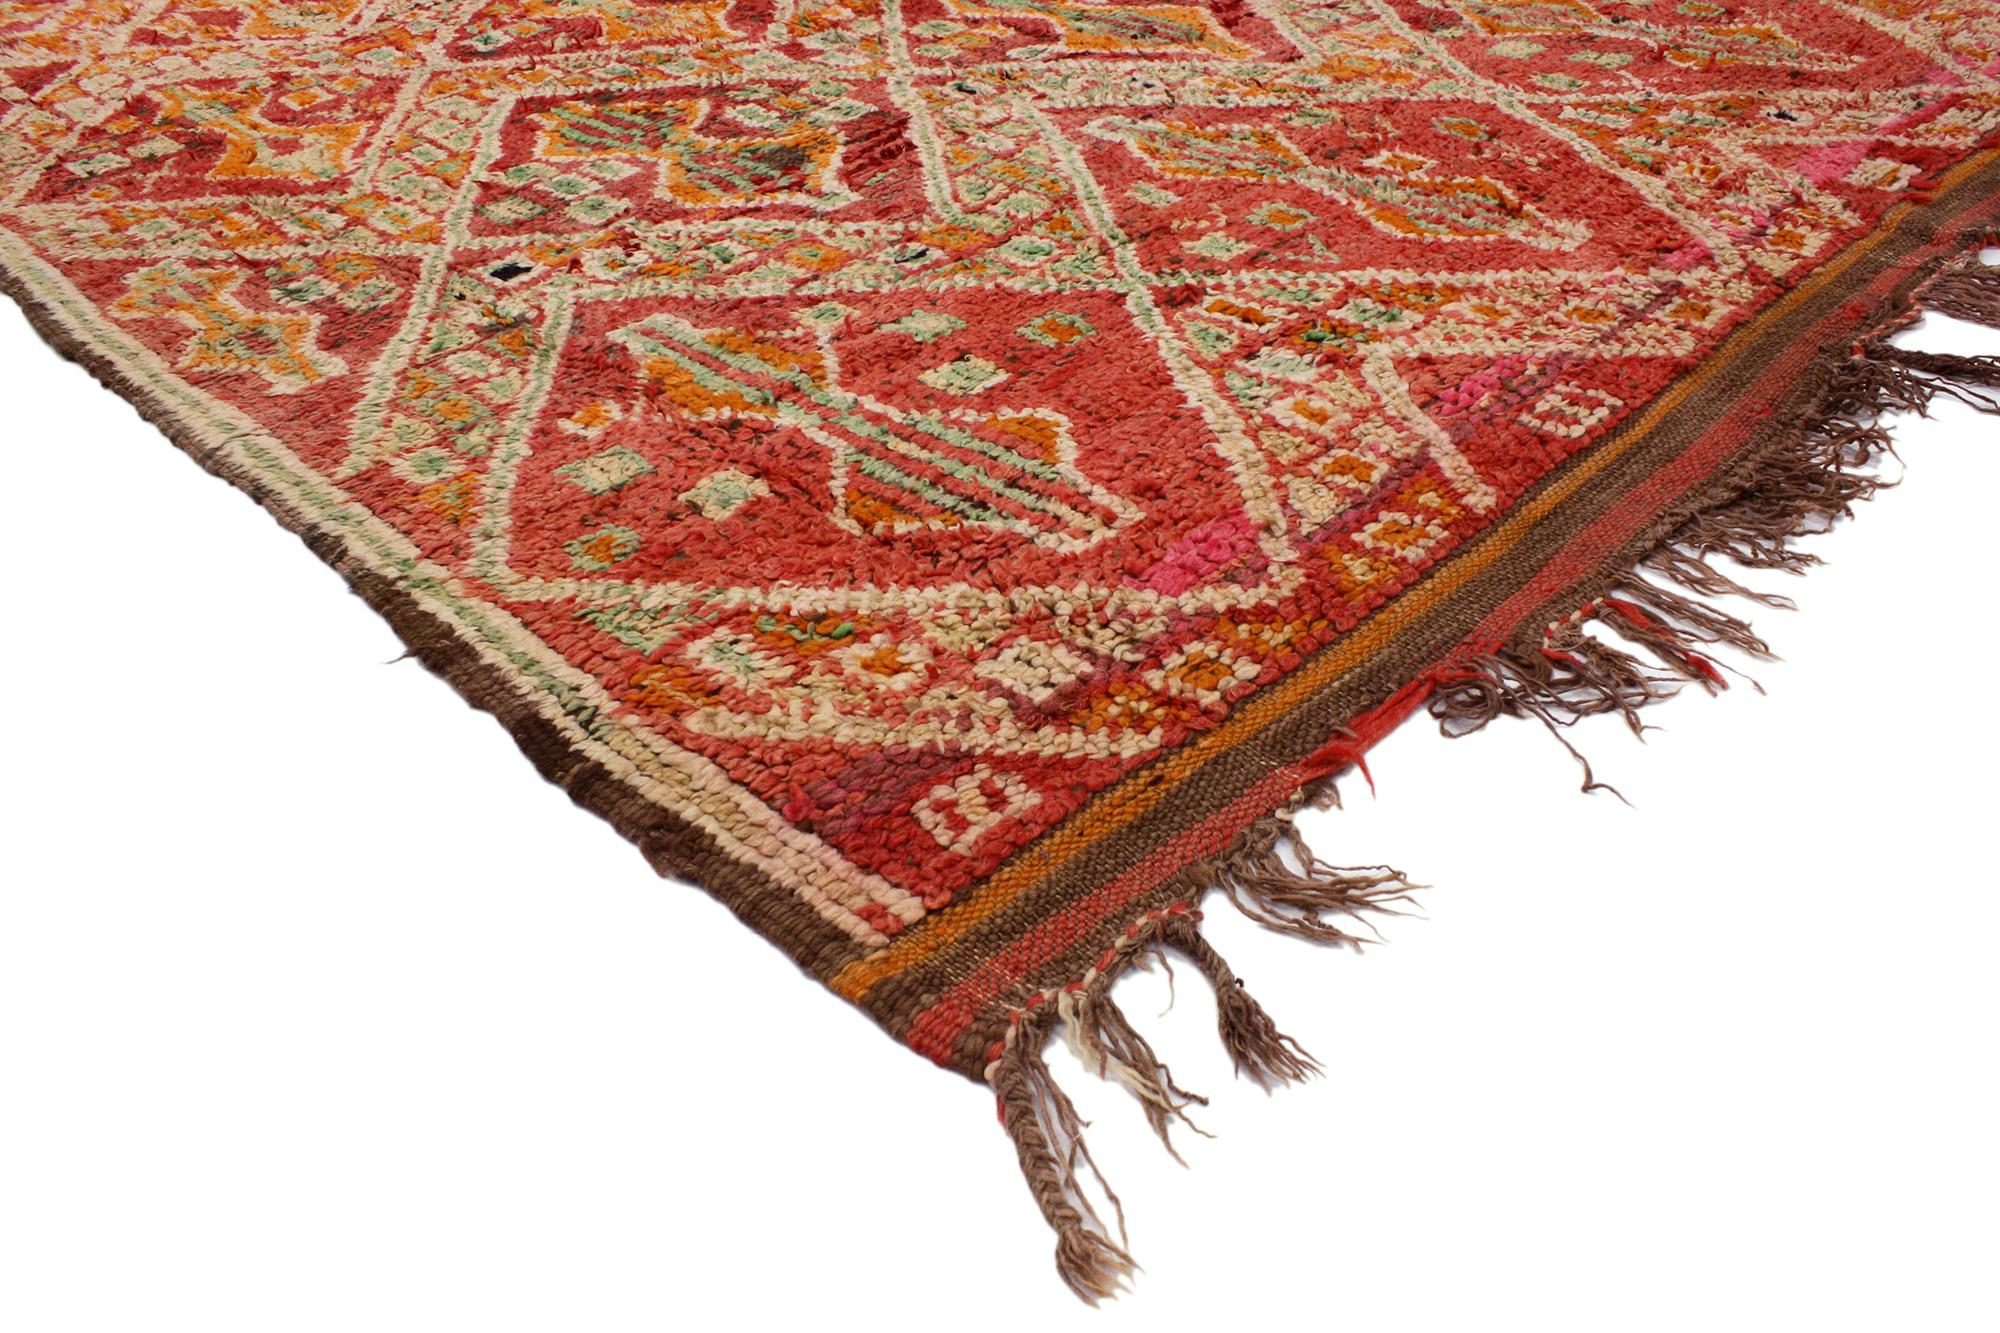 20262 Vintage Rot Beni MGuild Marokkanischer Teppich, 05'11 x 08'04. Die Beni M'Guild Rugs, die vom Stamm der Beni M'Guild im Mittleren Atlasgebirge in Marokko stammen, repräsentieren eine geschätzte Tradition, die tief in der Berberkultur